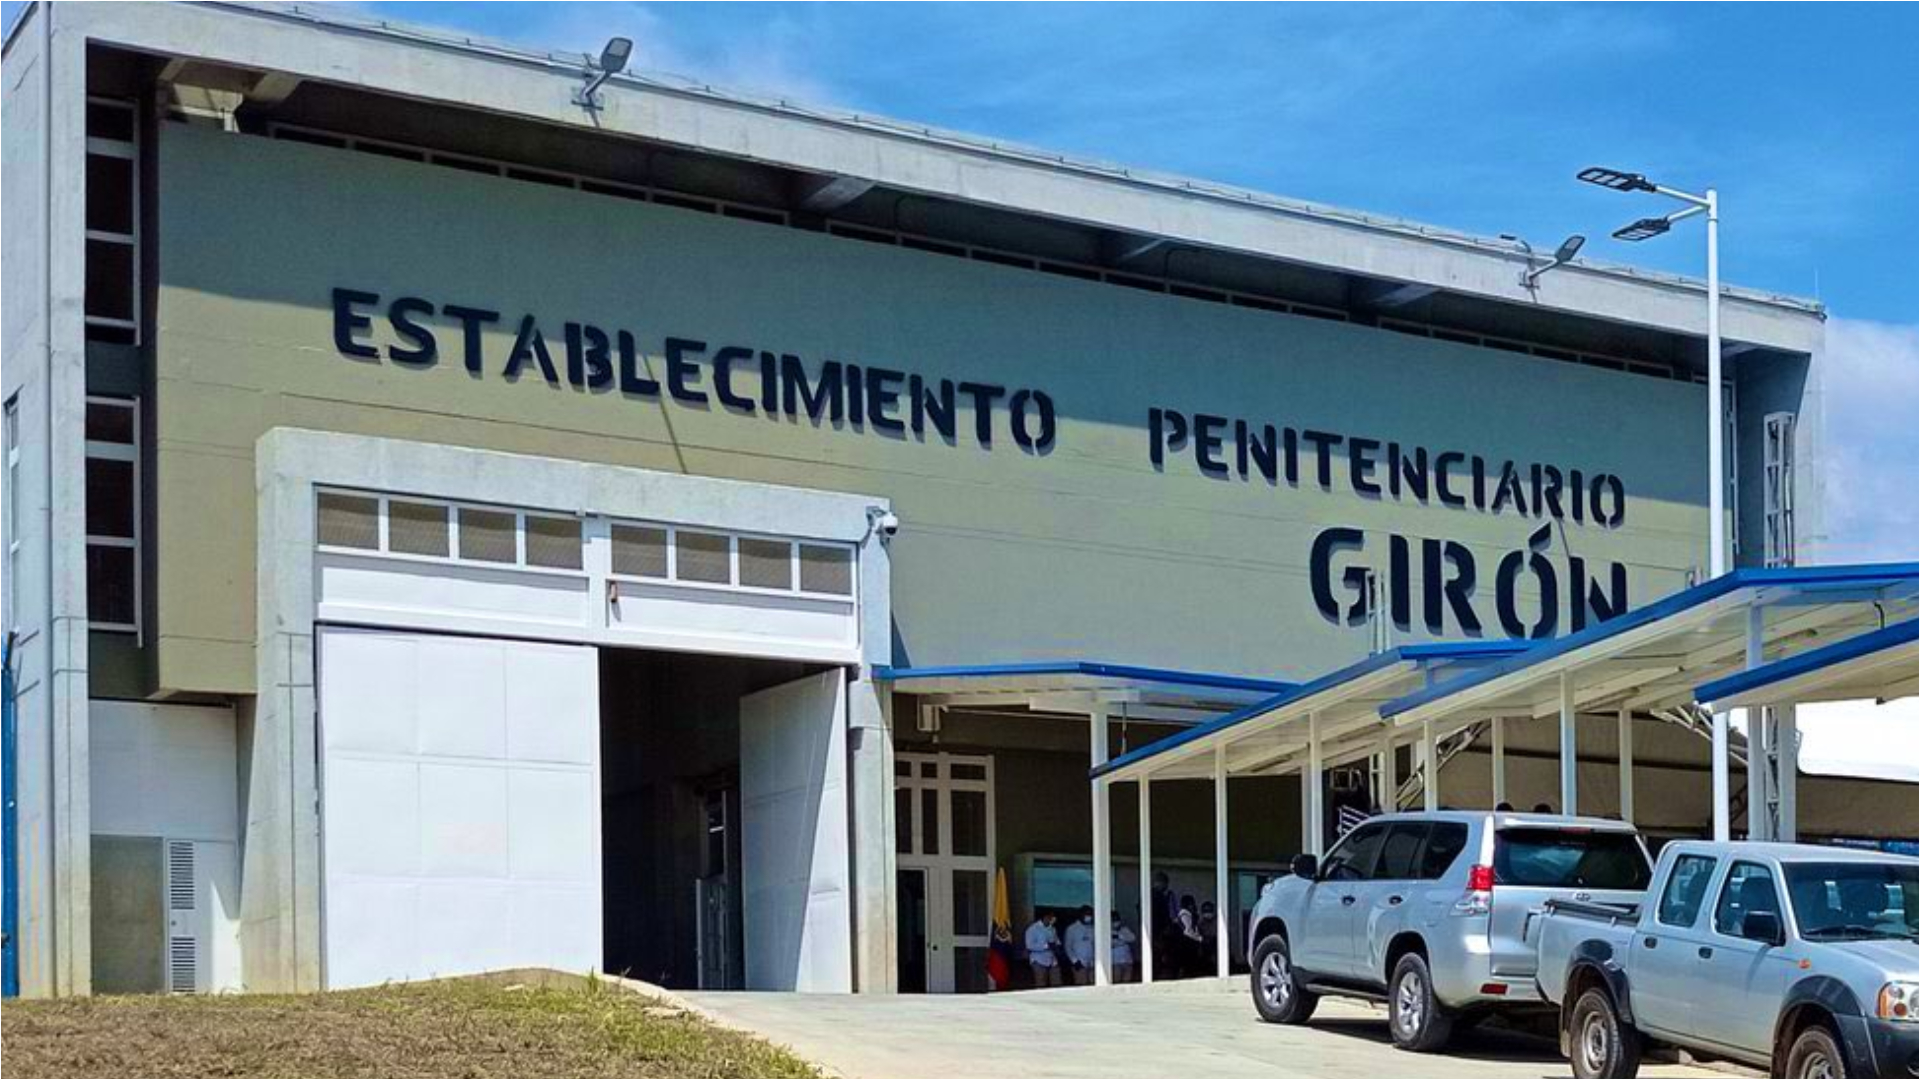 Centro penitenciario de Girón, Santander.